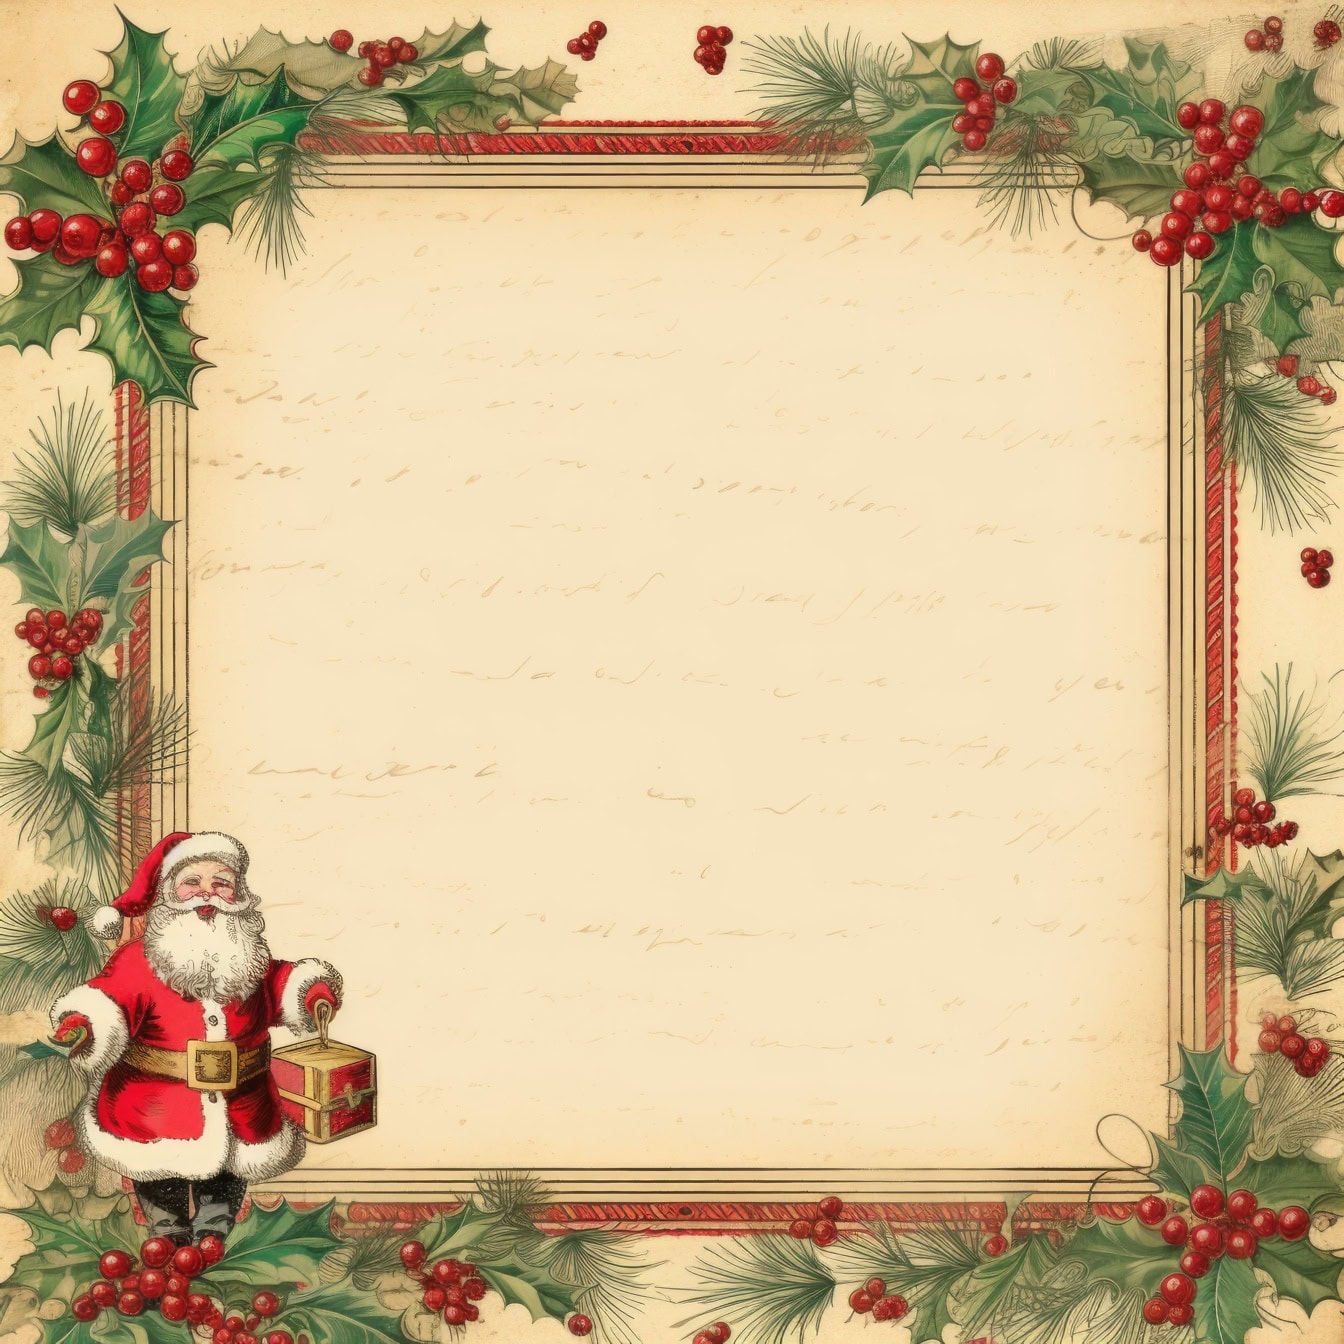 Một mẫu thiệp chúc mừng Giáng sinh truyền thống theo phong cách retro với khung vòng hoa holly và với ông già Noel